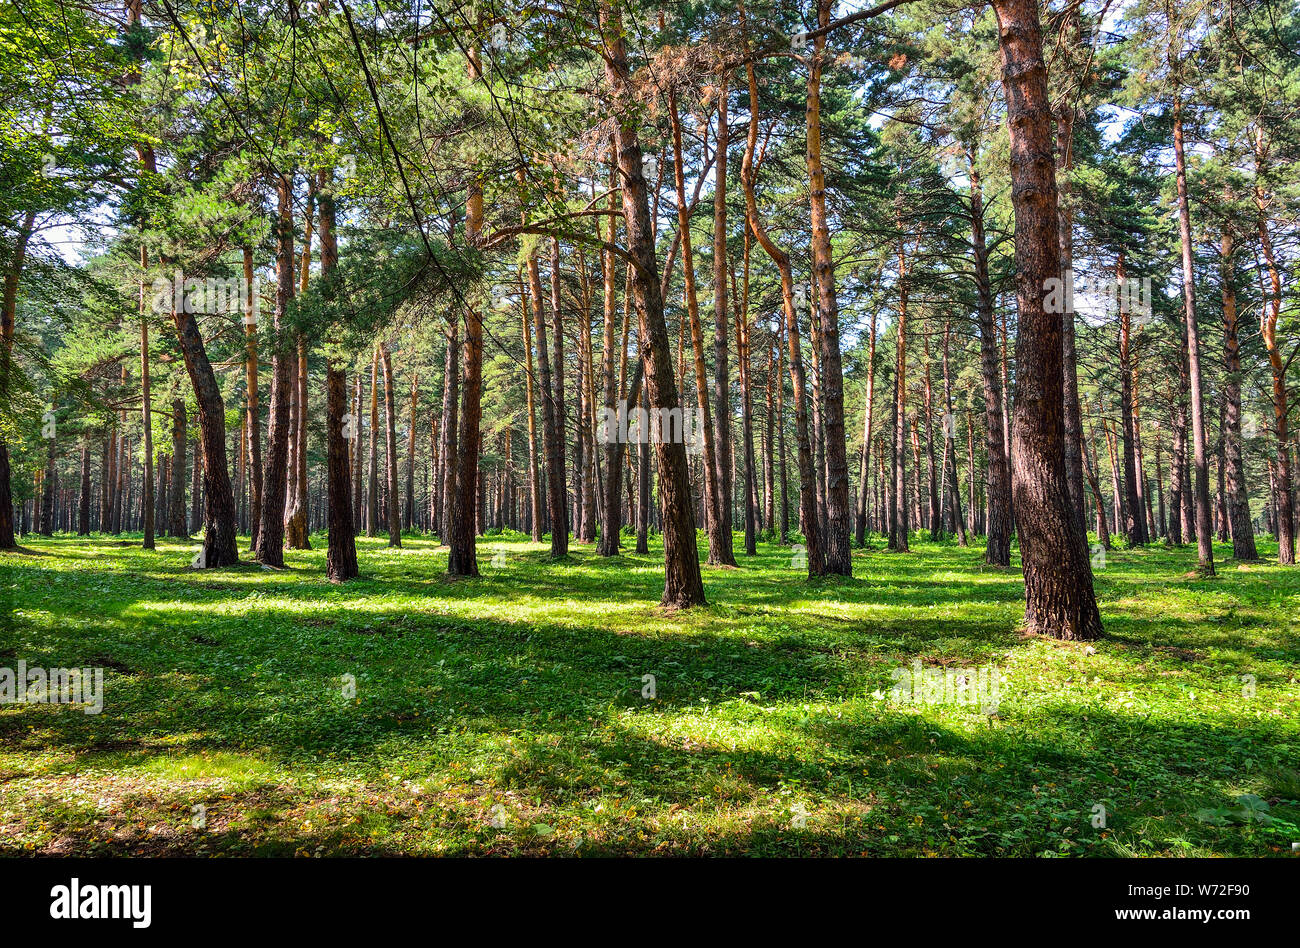 Forêts de pins - beau paysage ensoleillé d'été. Tout droit de grands troncs de pins, des tapis d'herbe verte, fraîche, propre de l'air en bonne santé. Fraîcheur et Banque D'Images